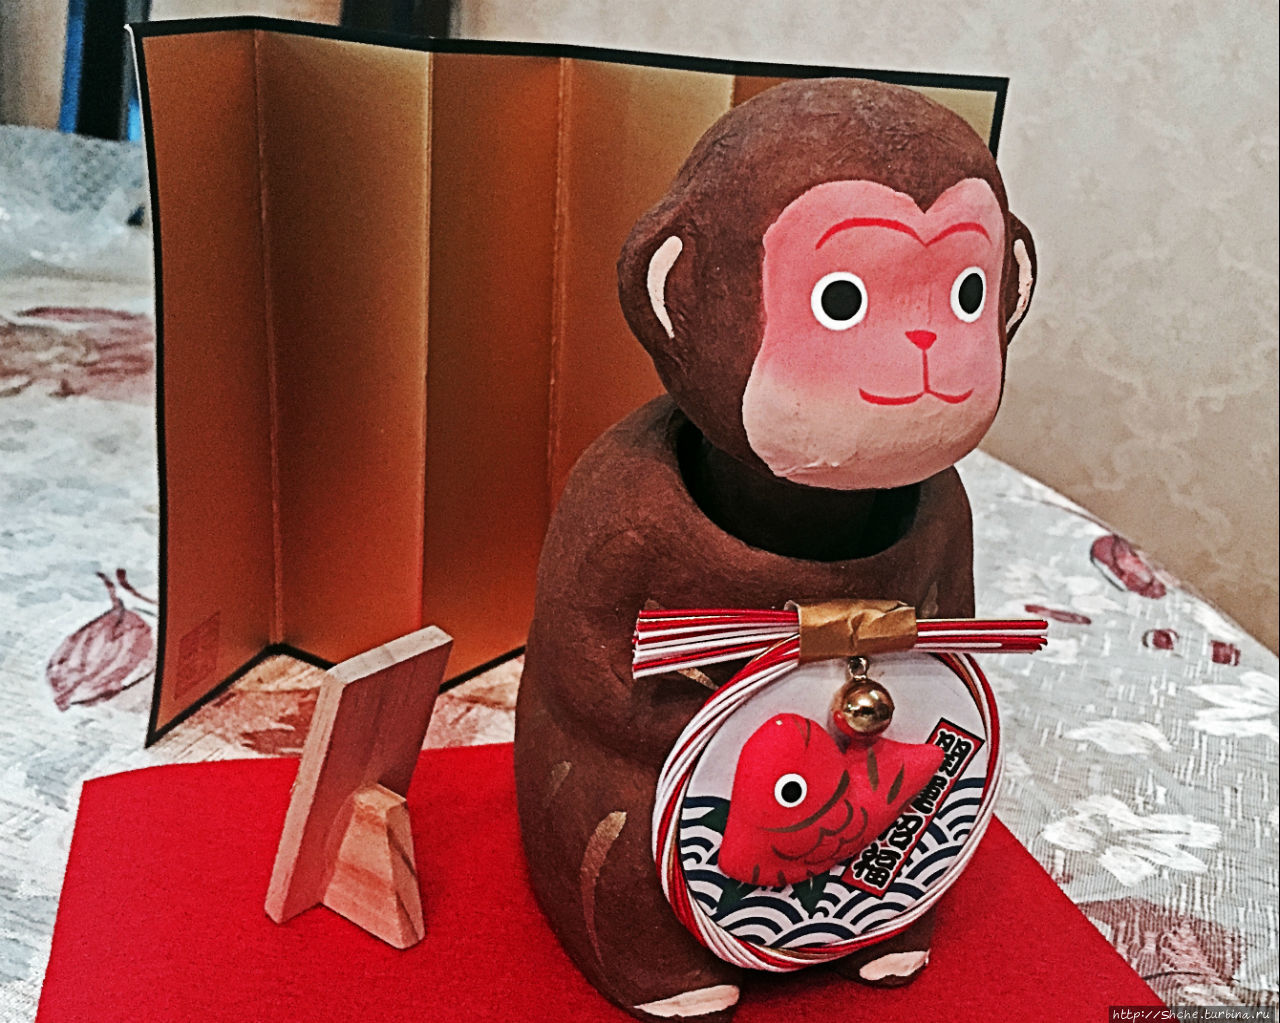 Верность традиции: обезьяна от друзей из Японии Рогань, Украина